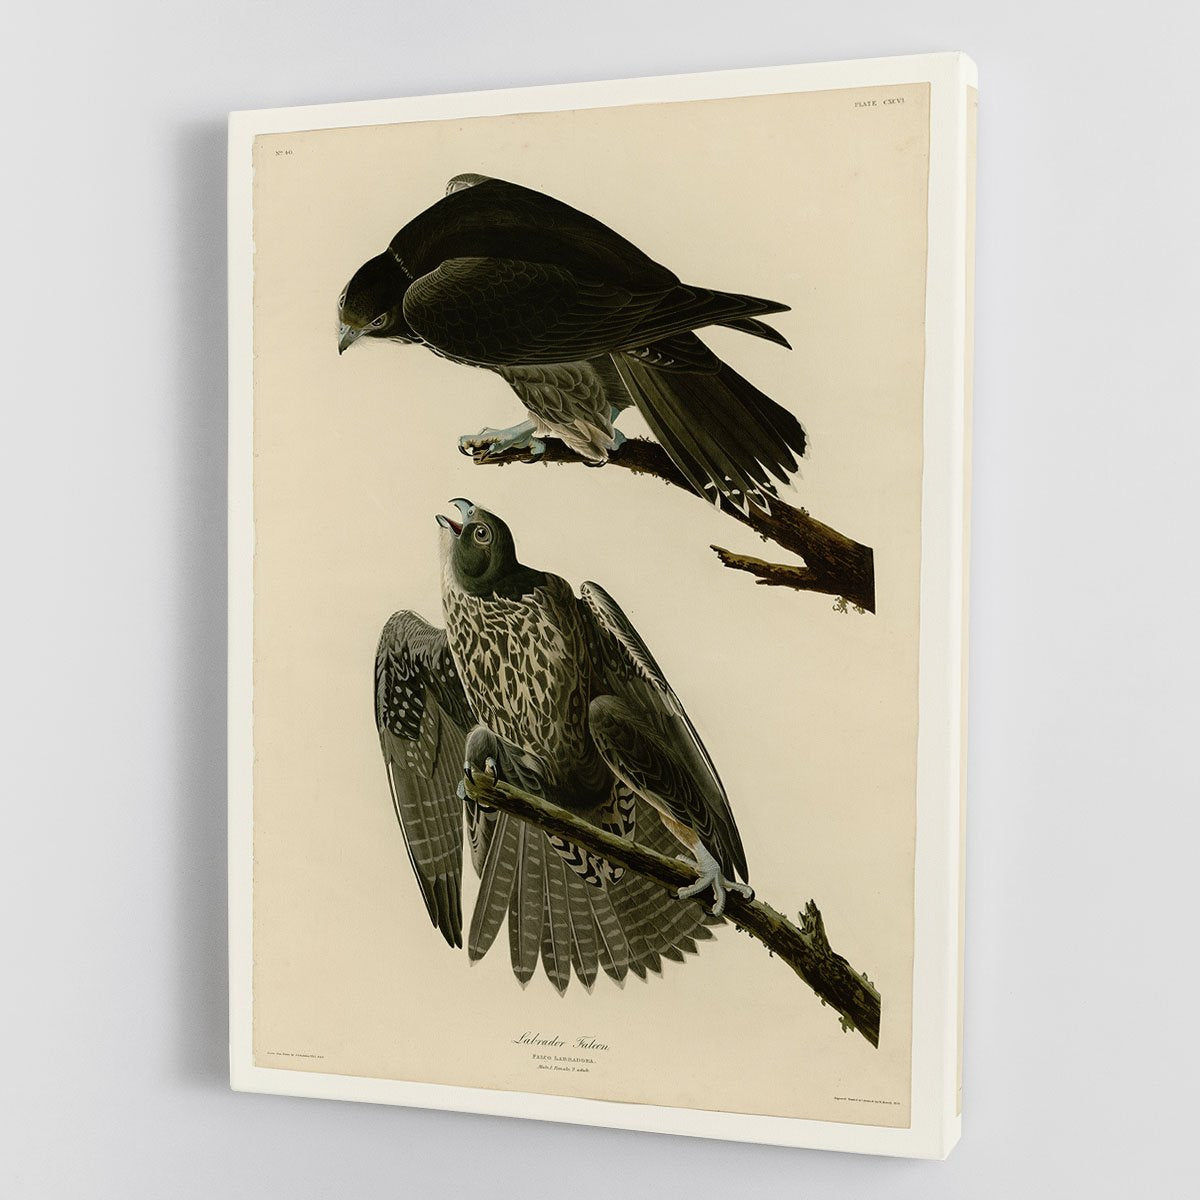 Labrador Falcon by Audubon Canvas Print or Poster